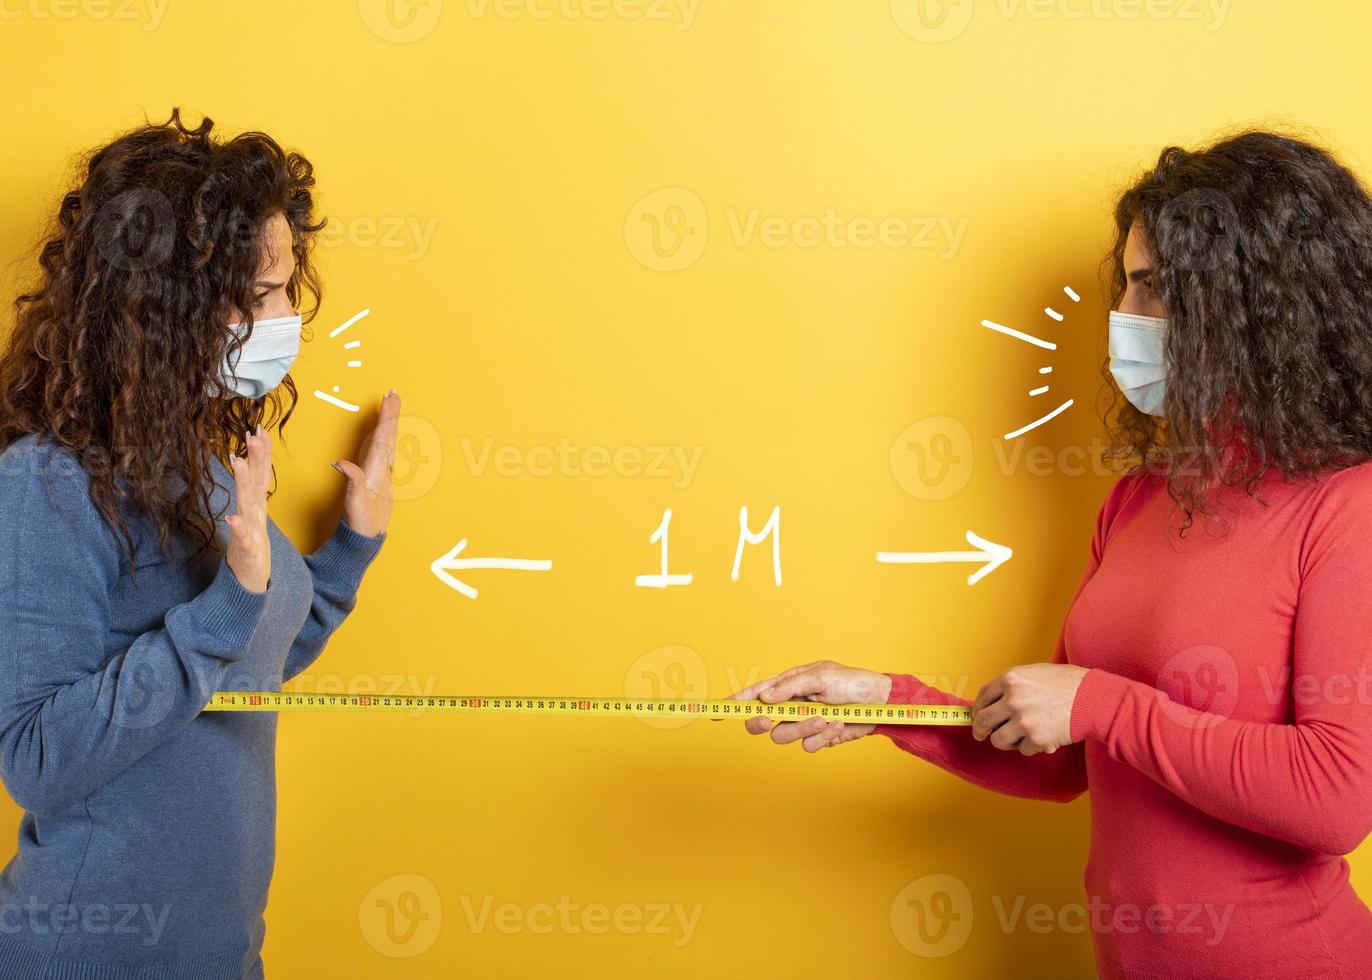 amici mantenere distanza fra loro di 1 metro. concetto di codiv-19 regole per evitare pandemia. giallo sfondo foto